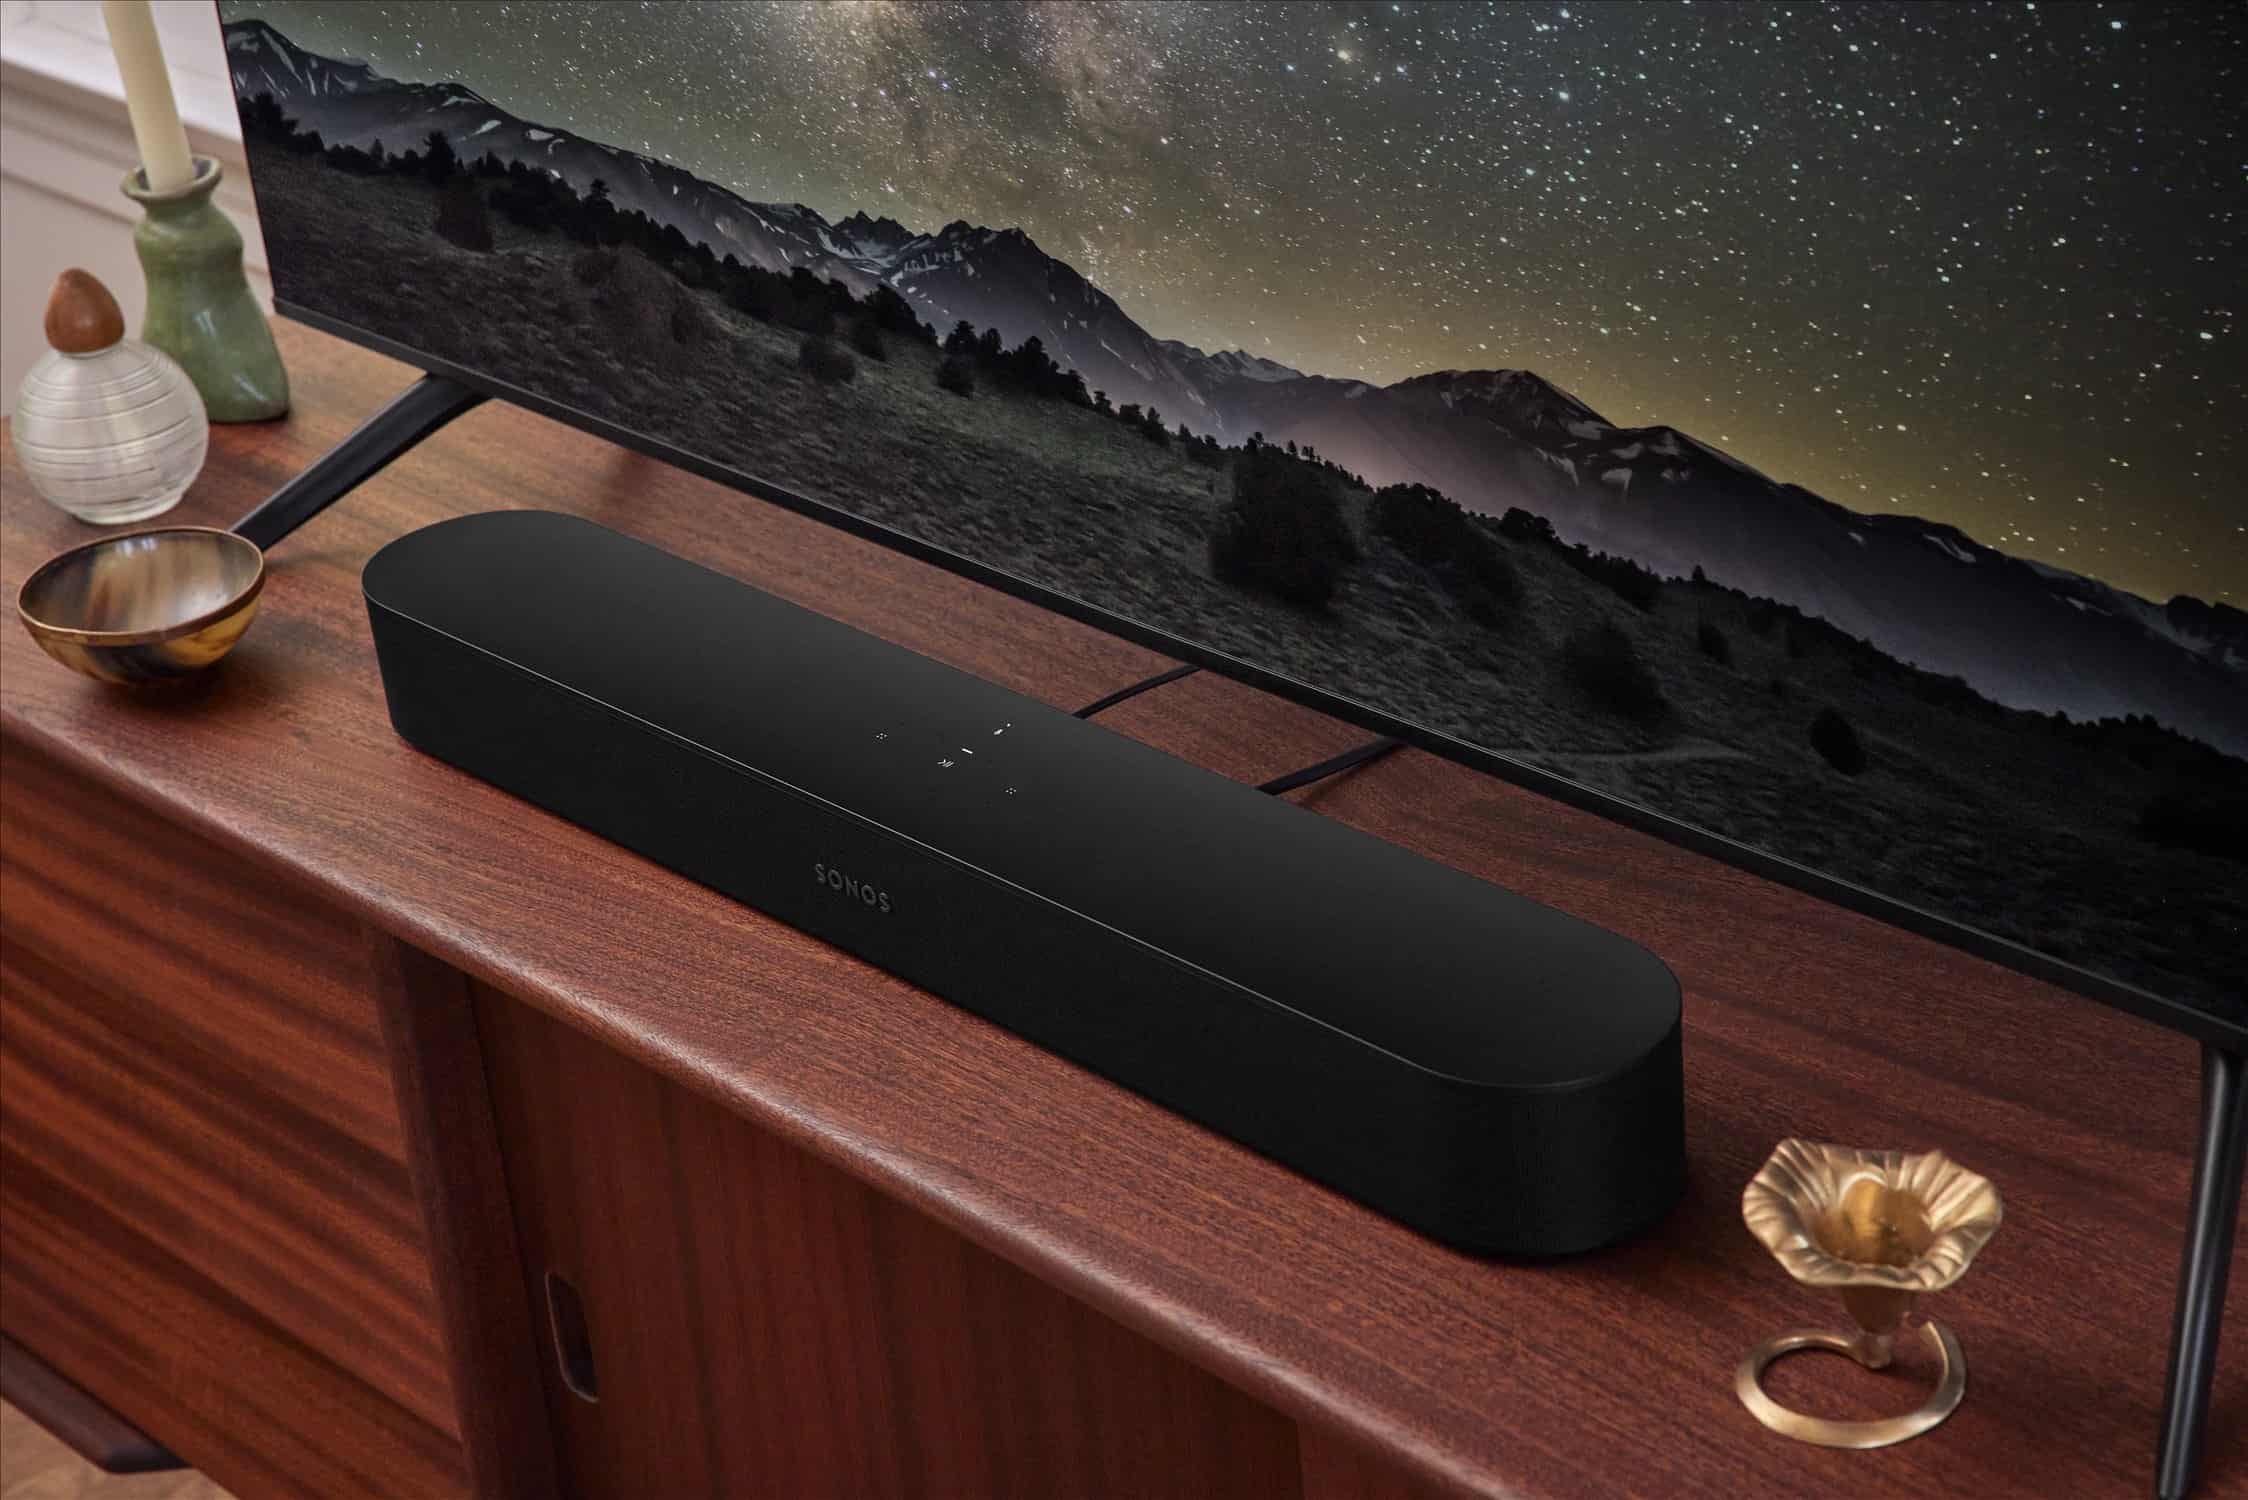 Sonos announced the next generation of their compact, smart soundbar, Sonos Beam